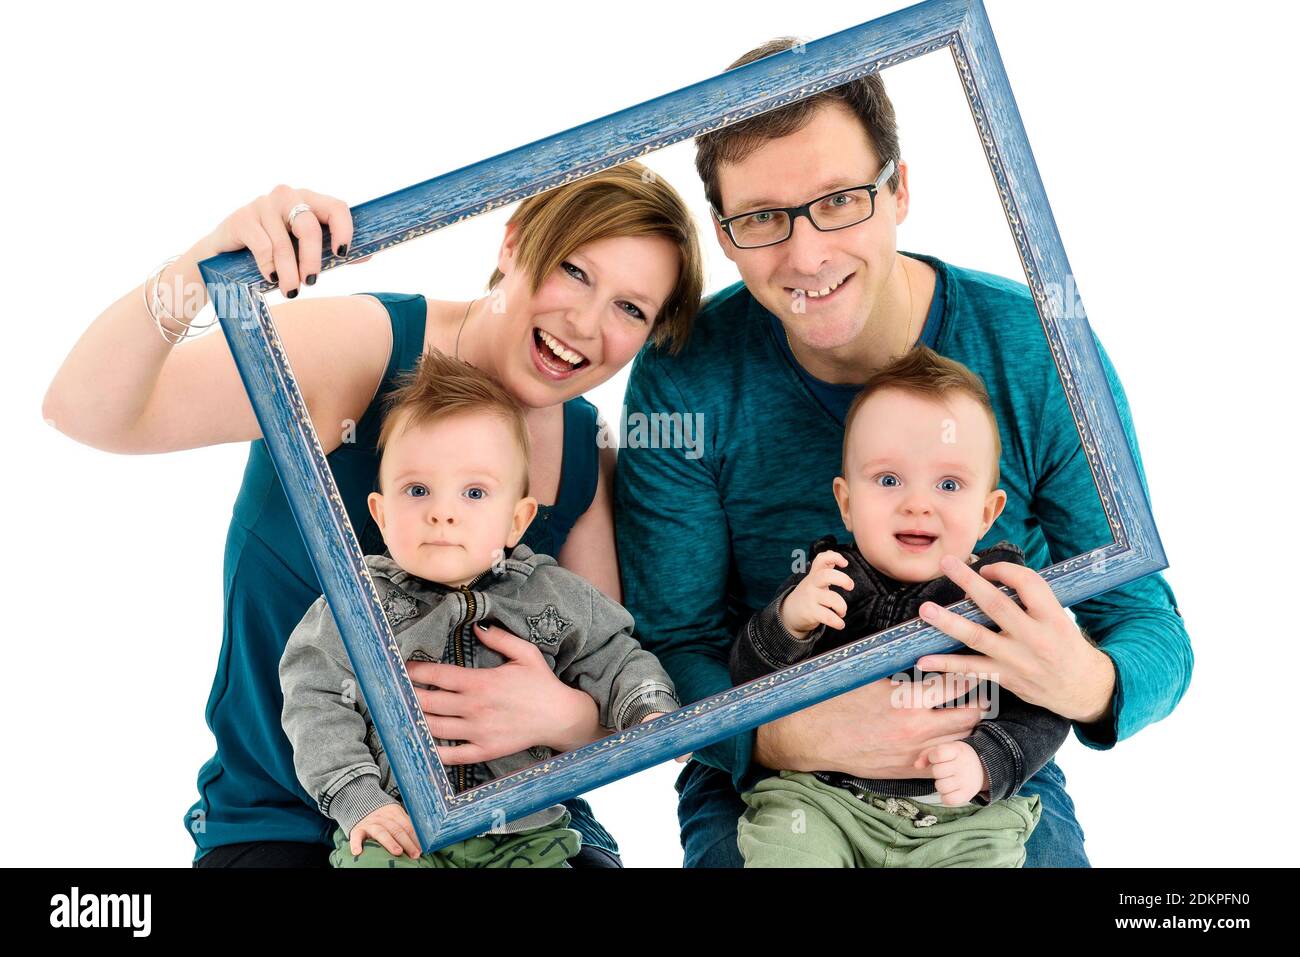 Une famille heureuse avec des jumeaux est en train de rire. Qu'ils soient  en possession d'un cadre photo pour faire un effet créatif sur portrait de  famille. Isolé sur blanc Photo Stock -